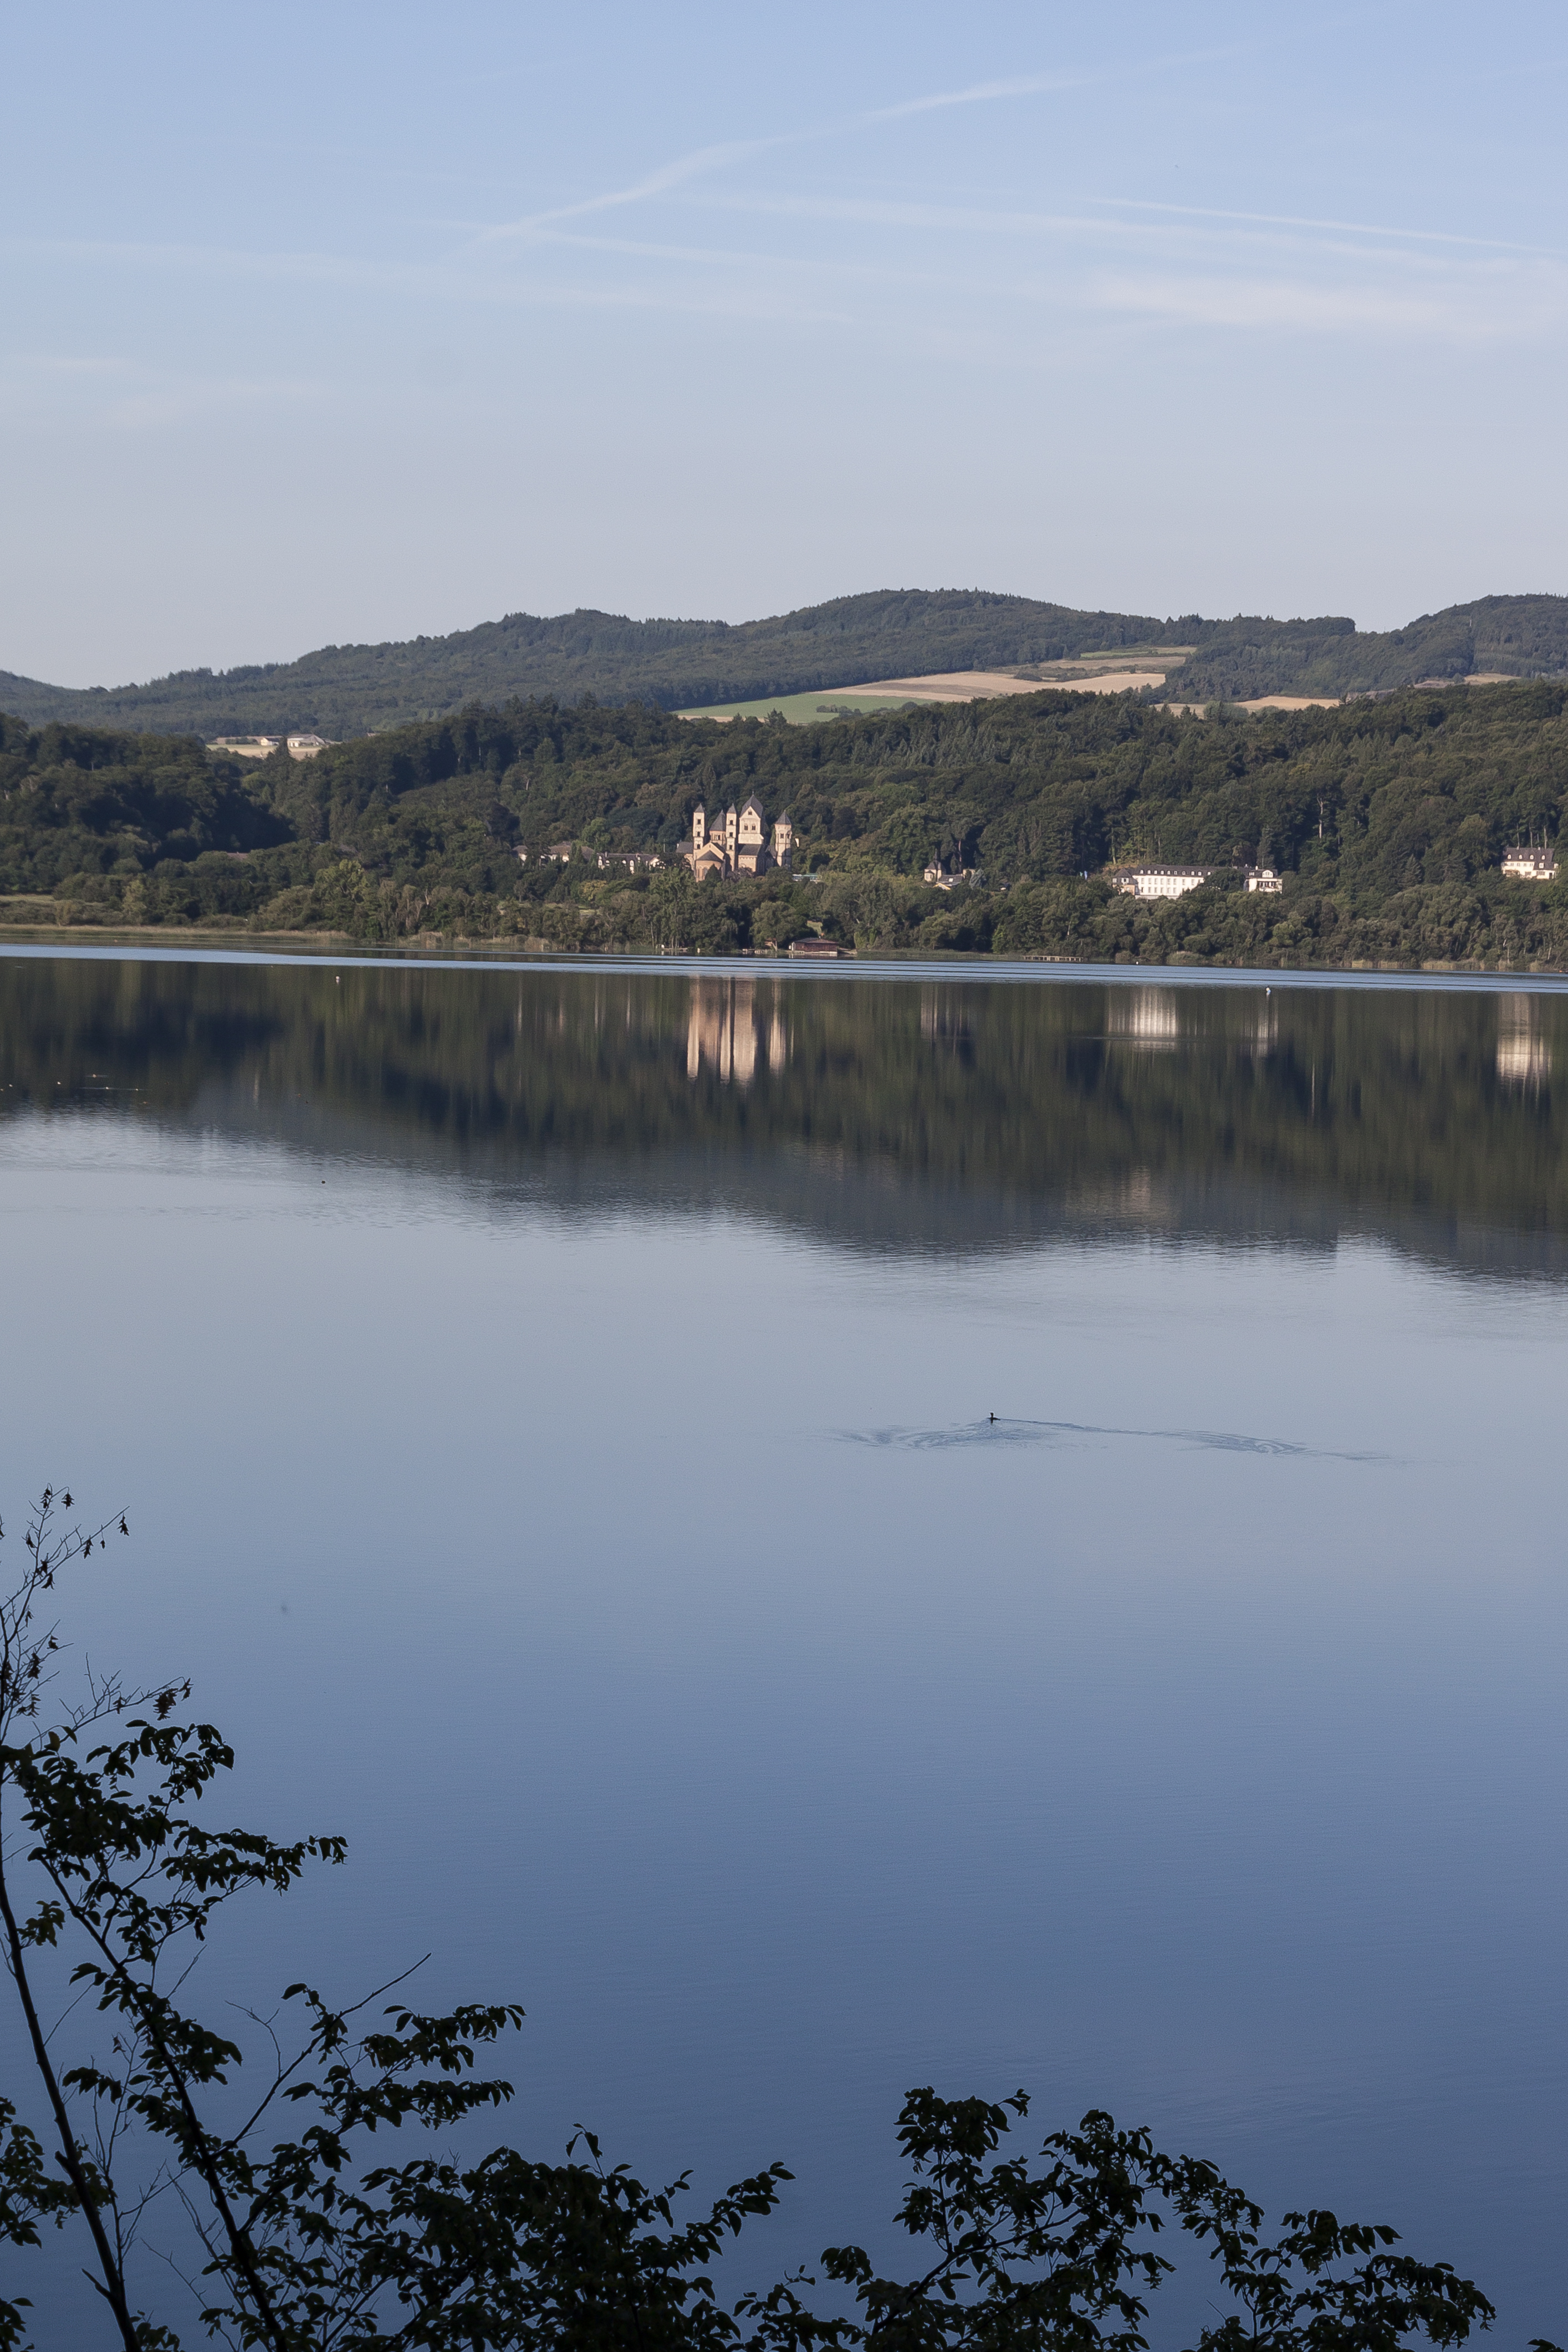 Naturschutzgebiet Laachersee. Die Abtei Maria Laach ist ein Kloster%2C das zu dem Benediktinerorden geh%C3%B6rt. Die hochmittelalterliche Klosteranlage ist an der S%C3%BCdwestseite des Laacher Sees gelegen%2C n%C3%B6rdlich von Mendig in der Eif